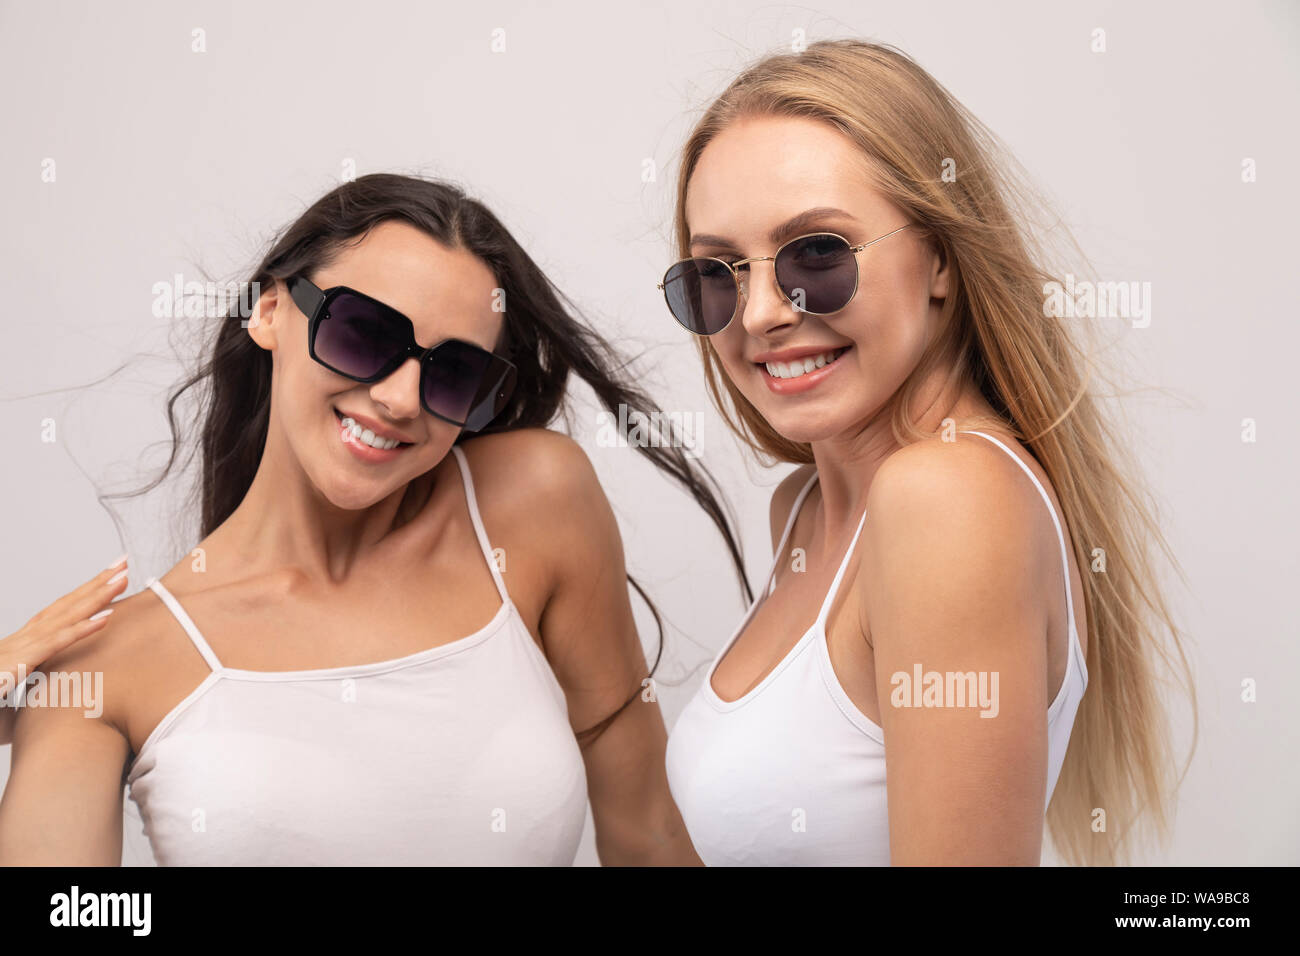 Deux modèles en blanc débardeur posing wearing trendy sunglasses isolé sur fond blanc Banque D'Images